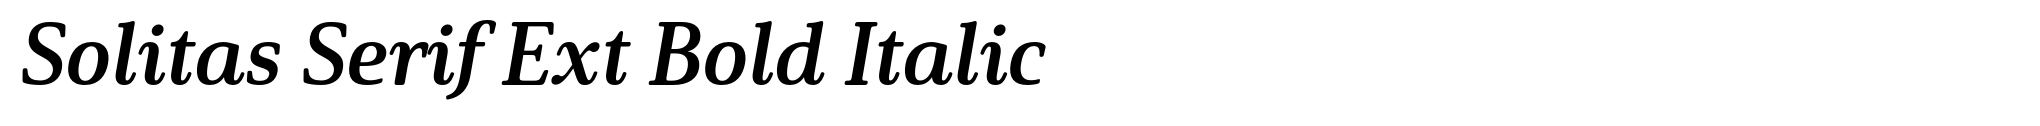 Solitas Serif Ext Bold Italic image